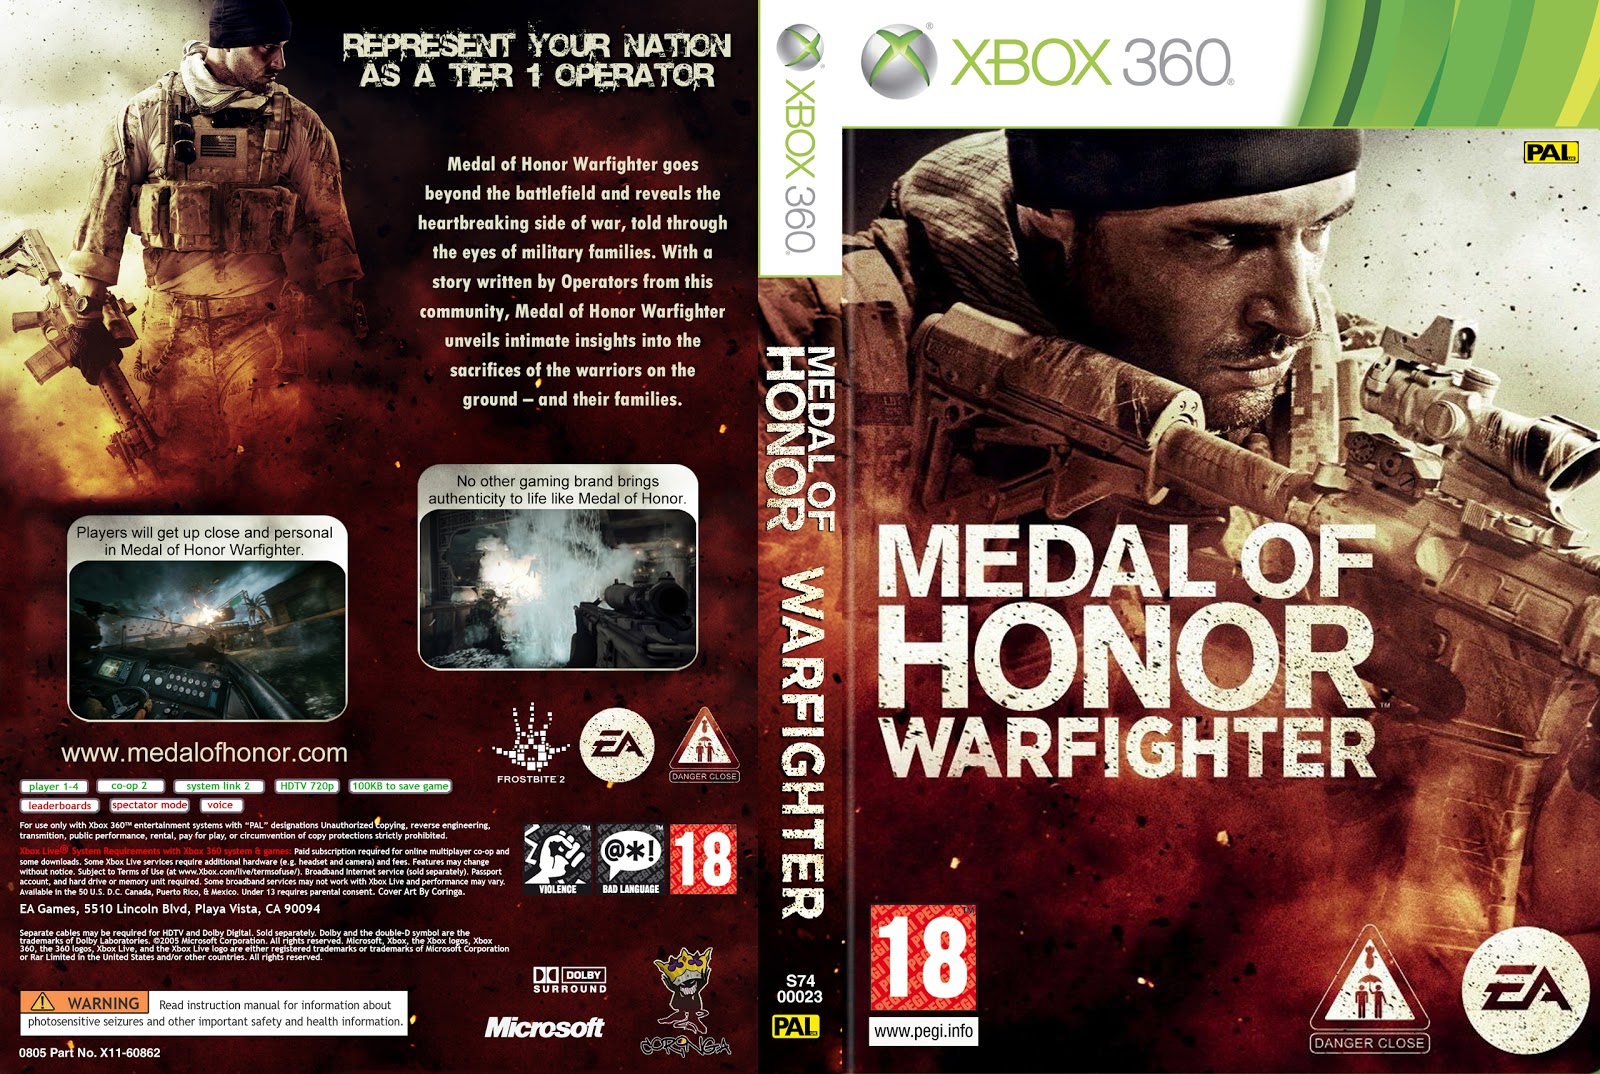 Medal of honor коды. Медаль оф хонор 2010 диск. Диск медал оф хонор. Medal of Honor Warfighter Xbox 360. Medal of Honor Xbox 360 обложка для дисков.